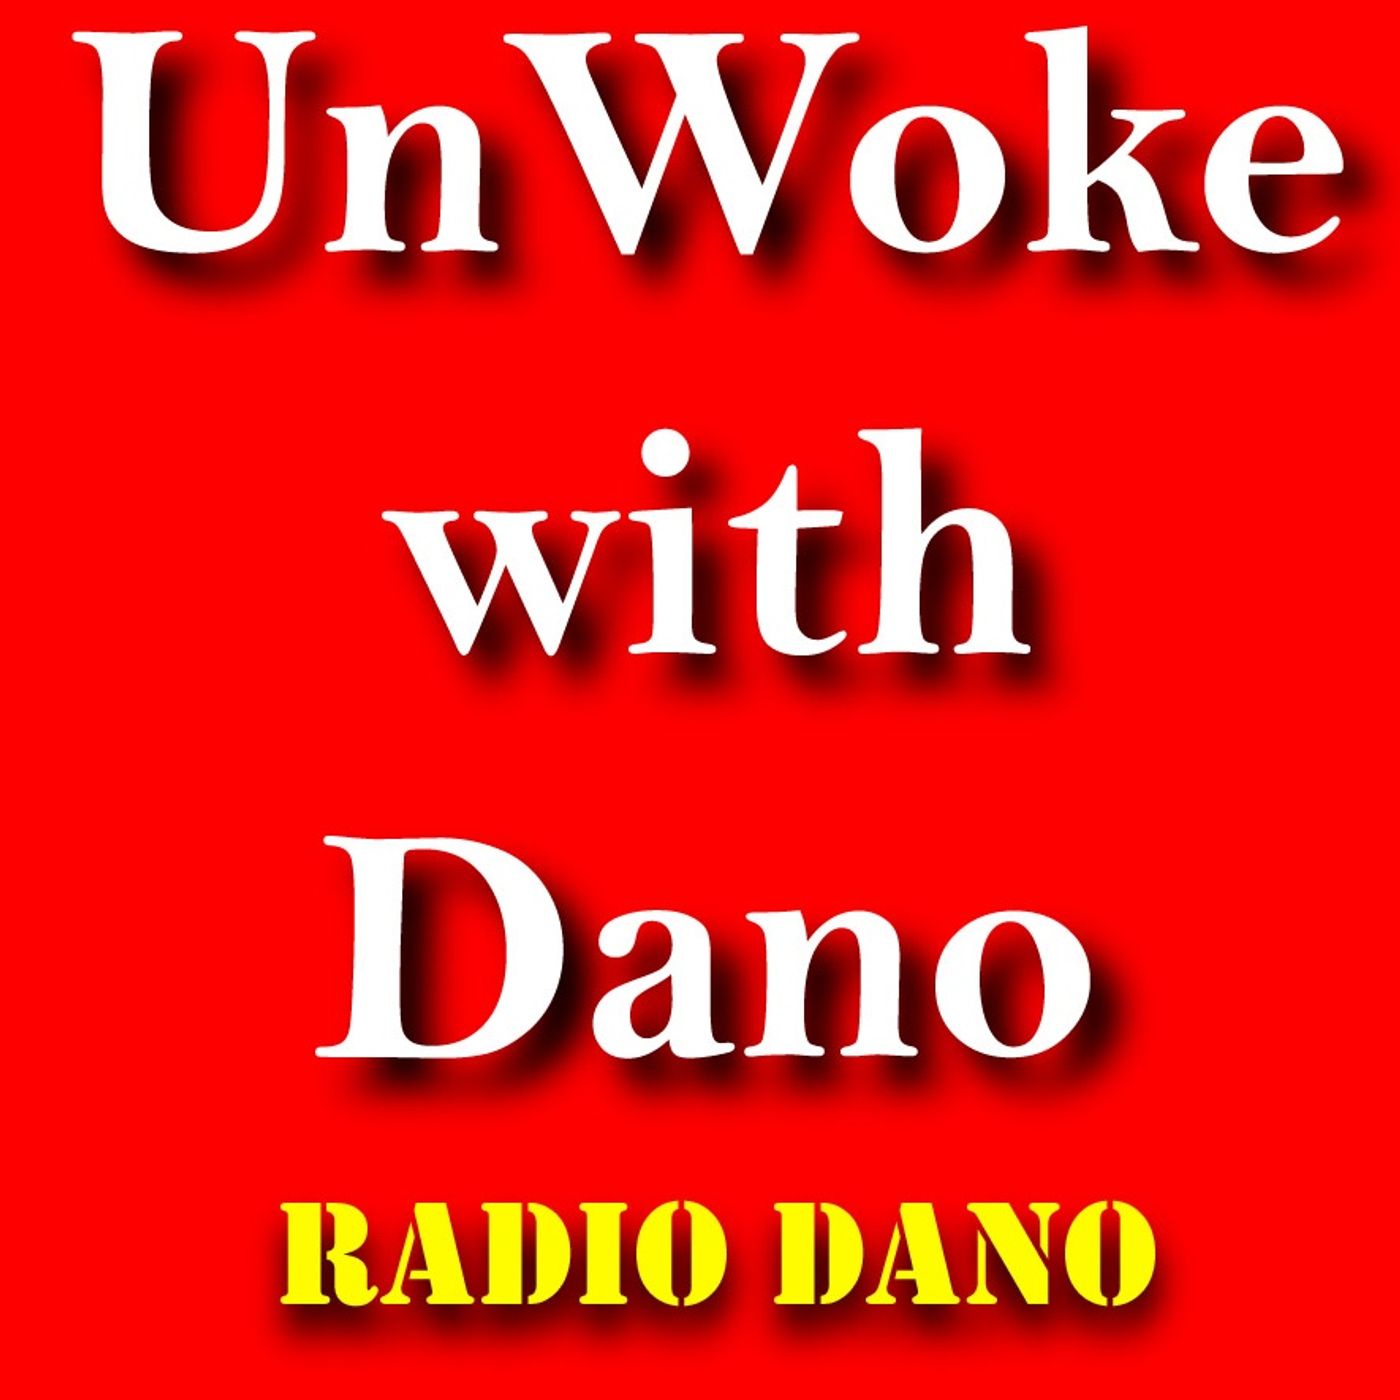 UnWoke With Dano